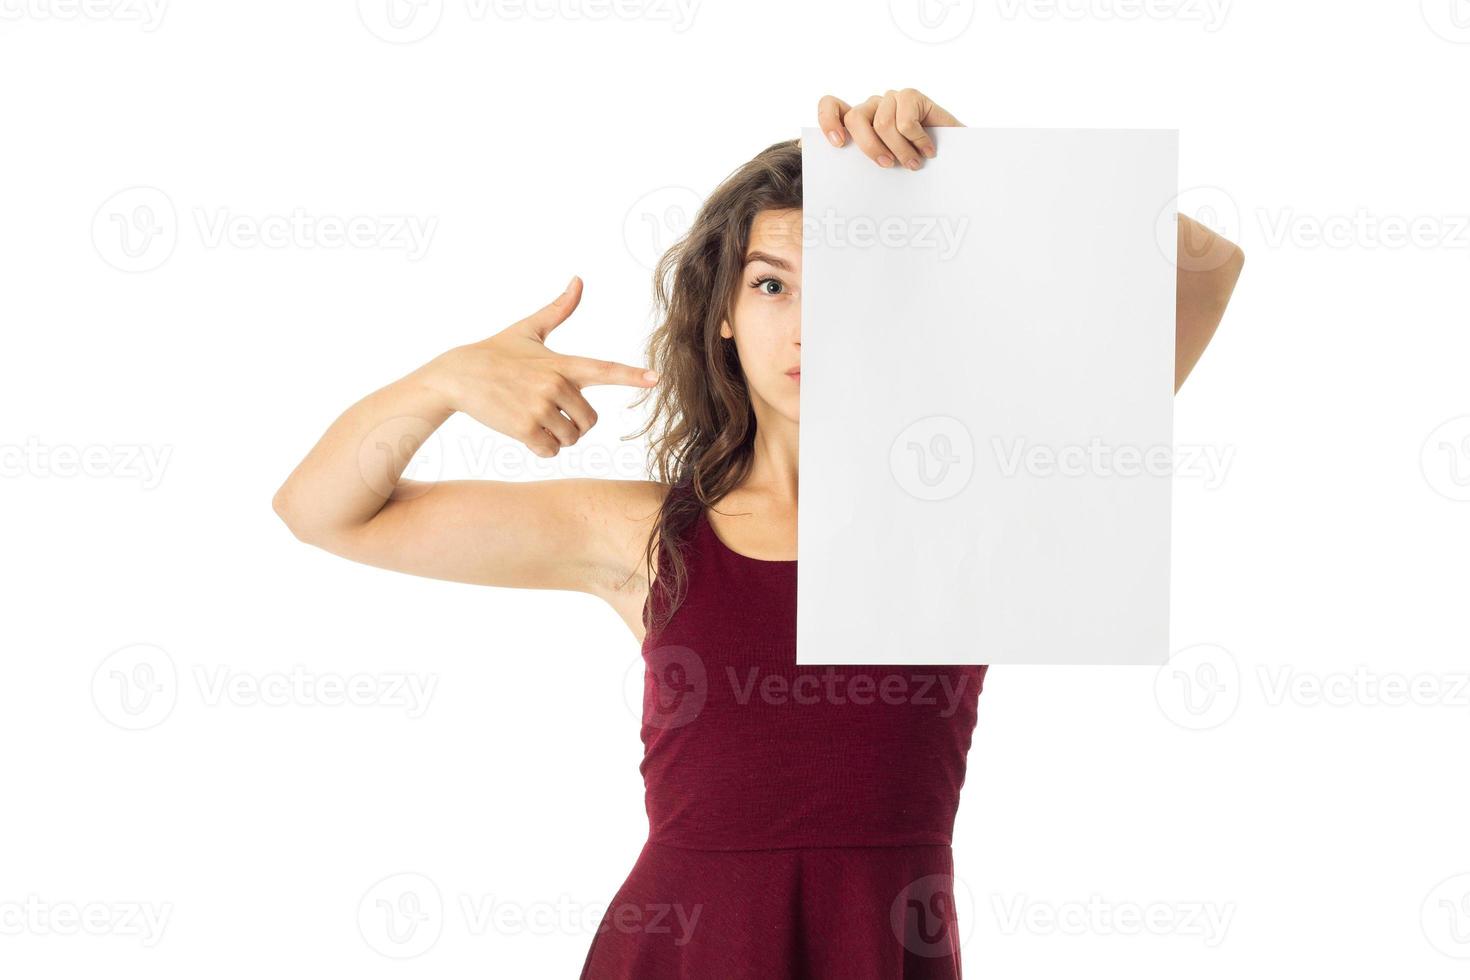 chica en vestido rojo con cartel blanco foto